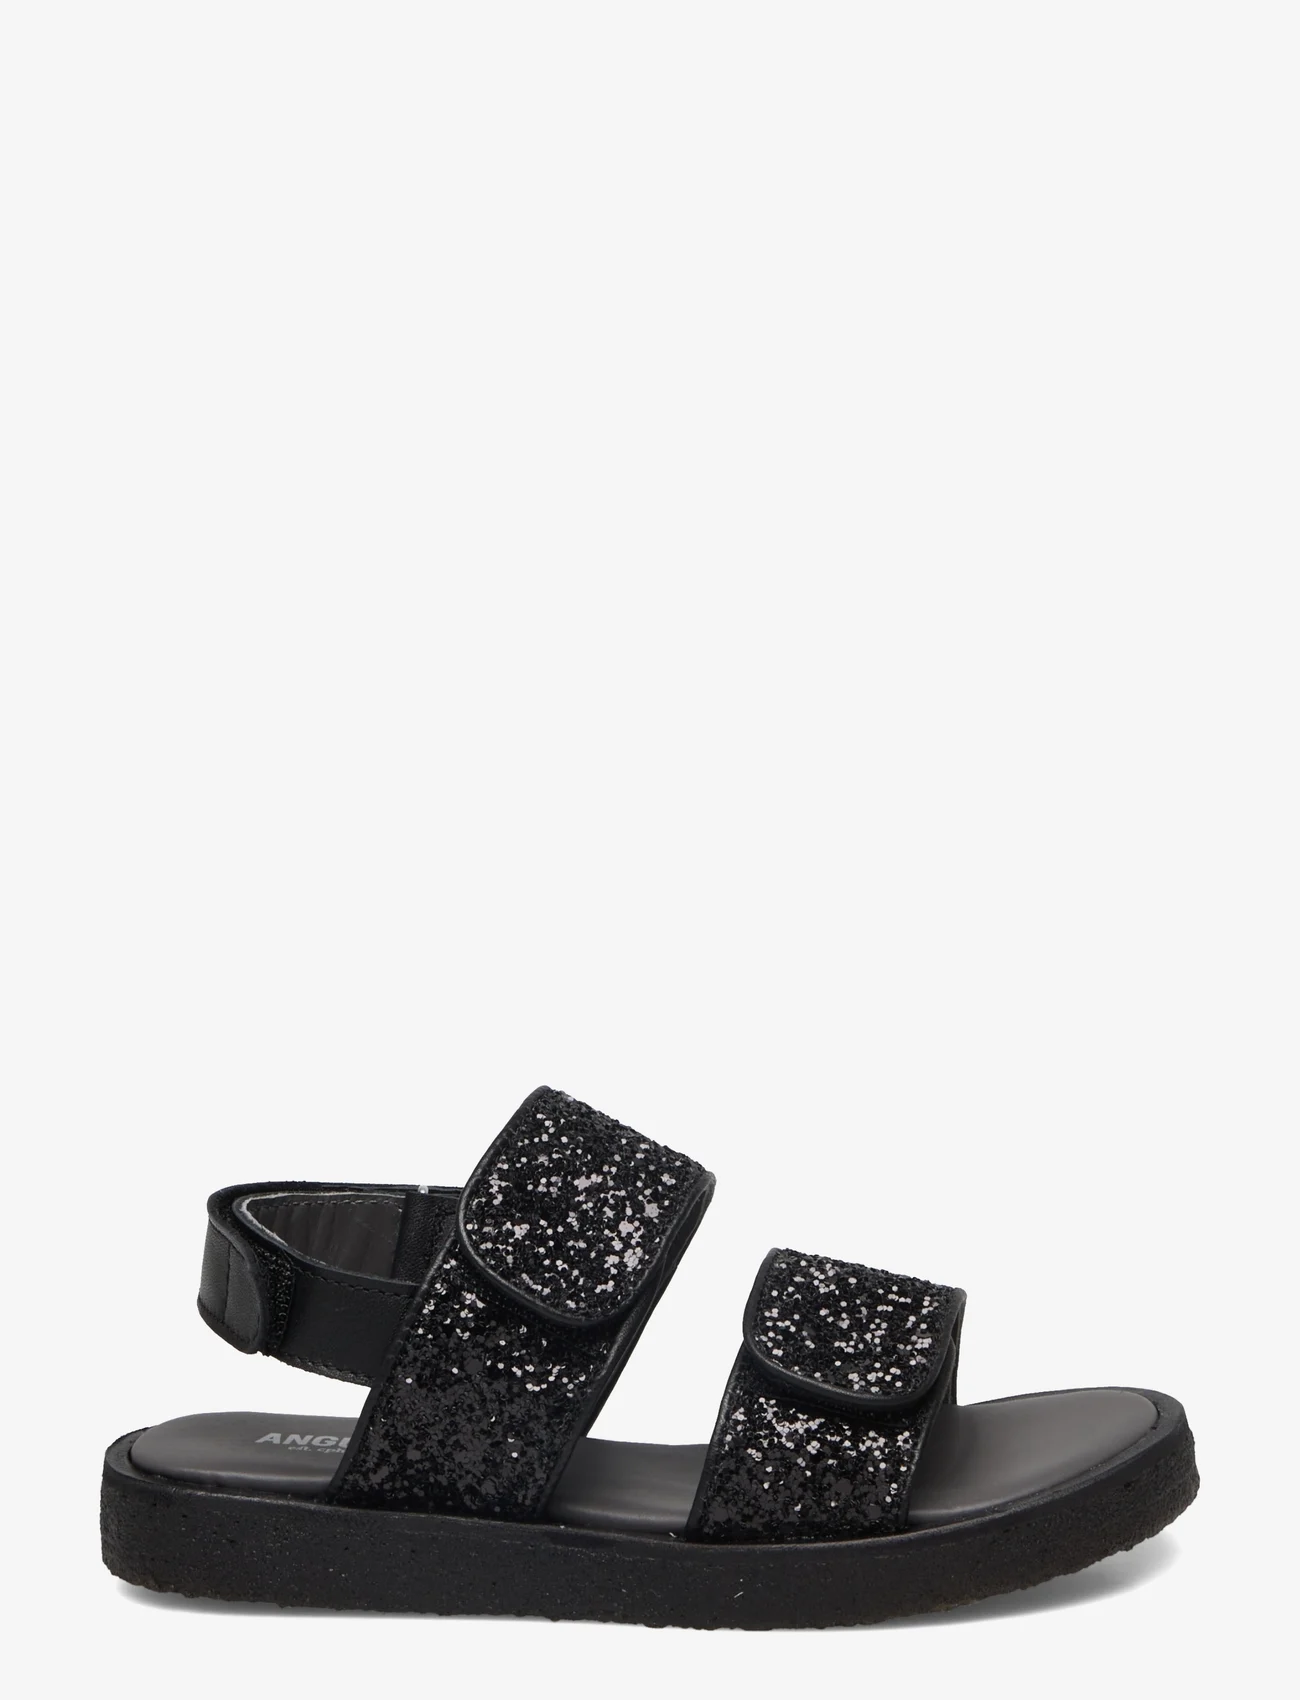 ANGULUS - Sandals - flat - open toe - op - gode sommertilbud - 1604/2486 black/black glitter - 1